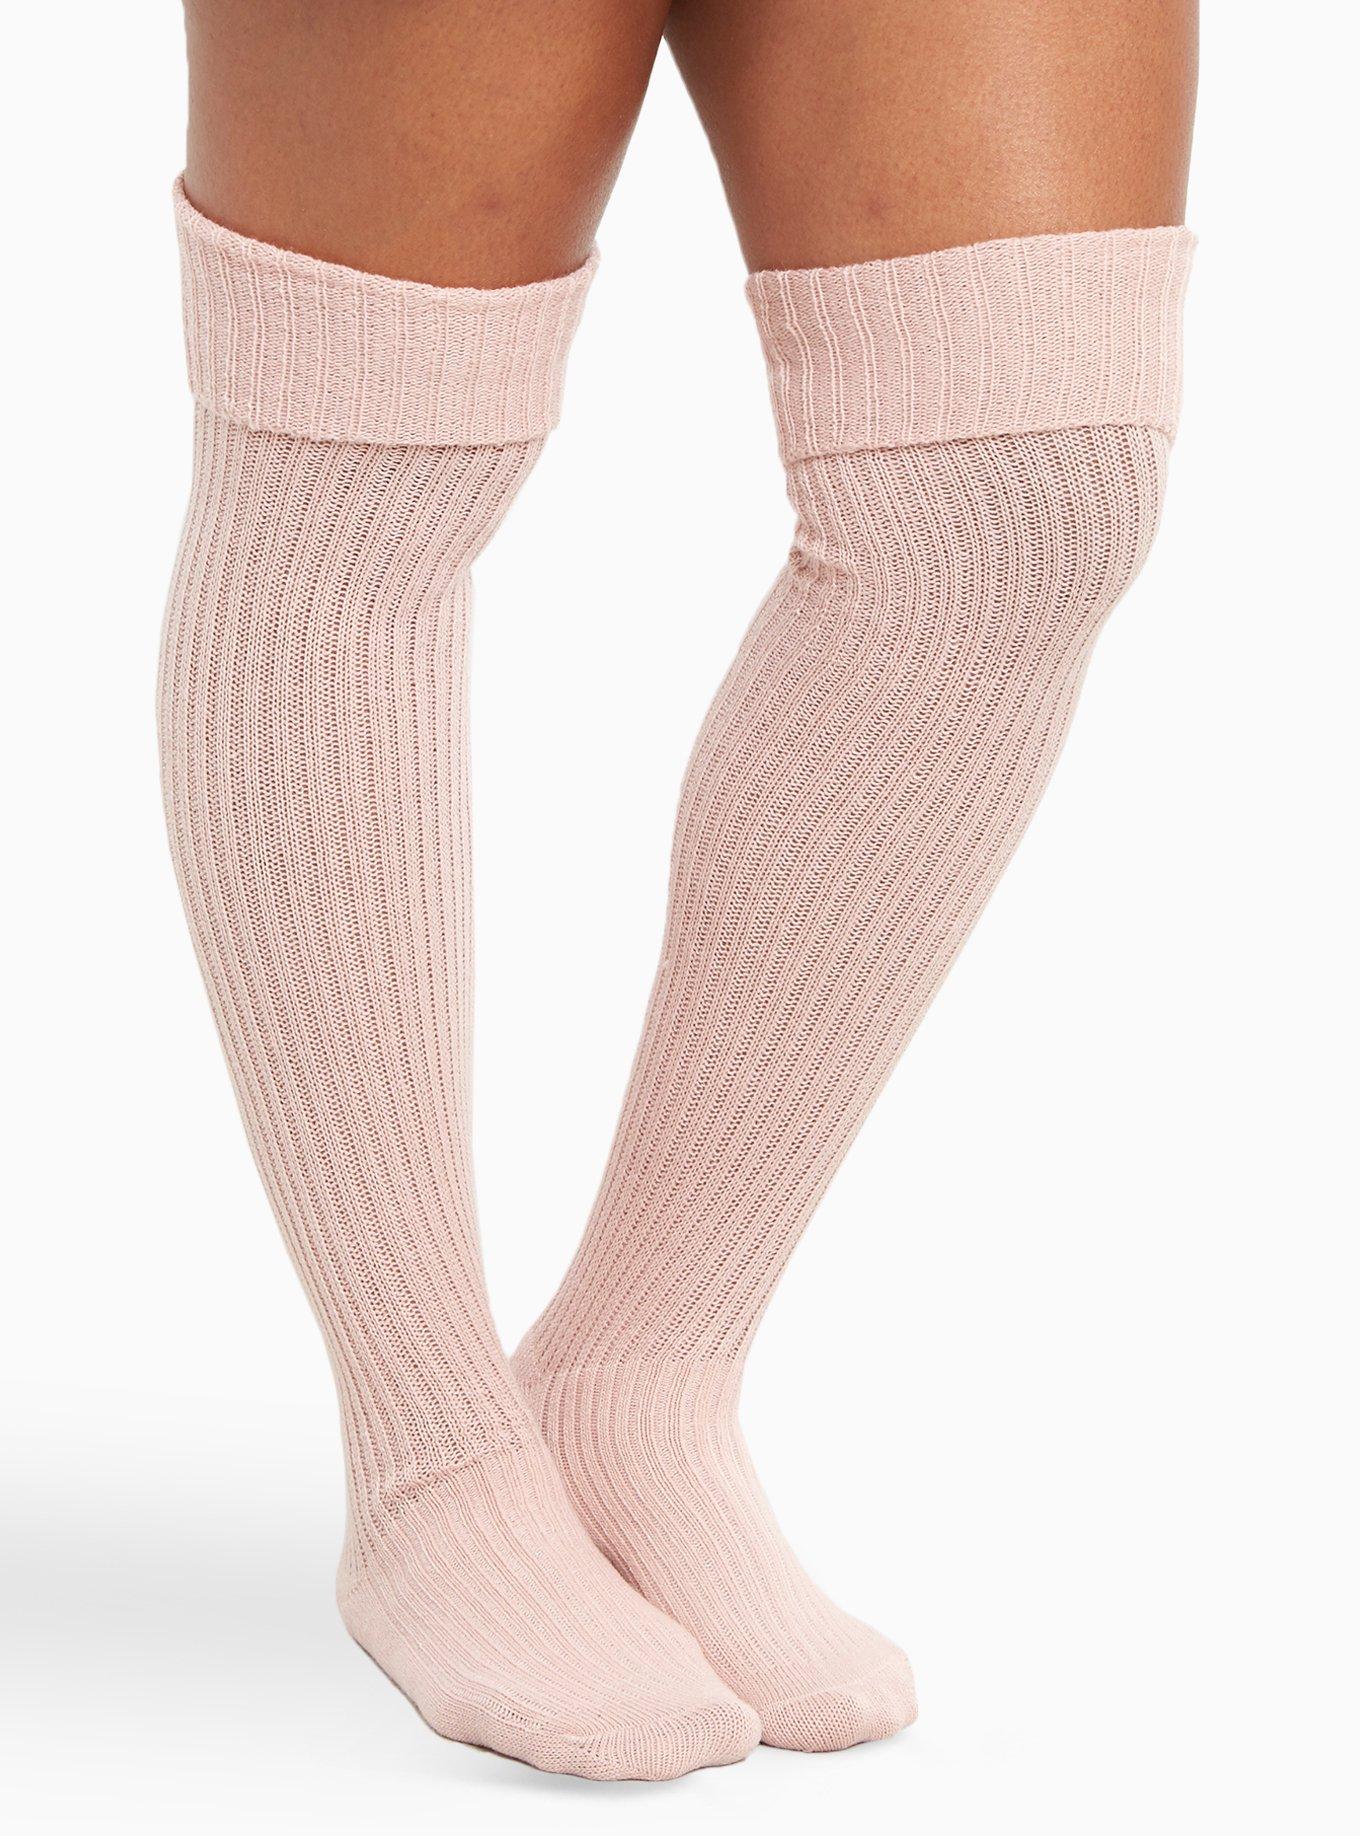 Beauty Lady G Tight Shapewear Socks For Women Sexy Letter